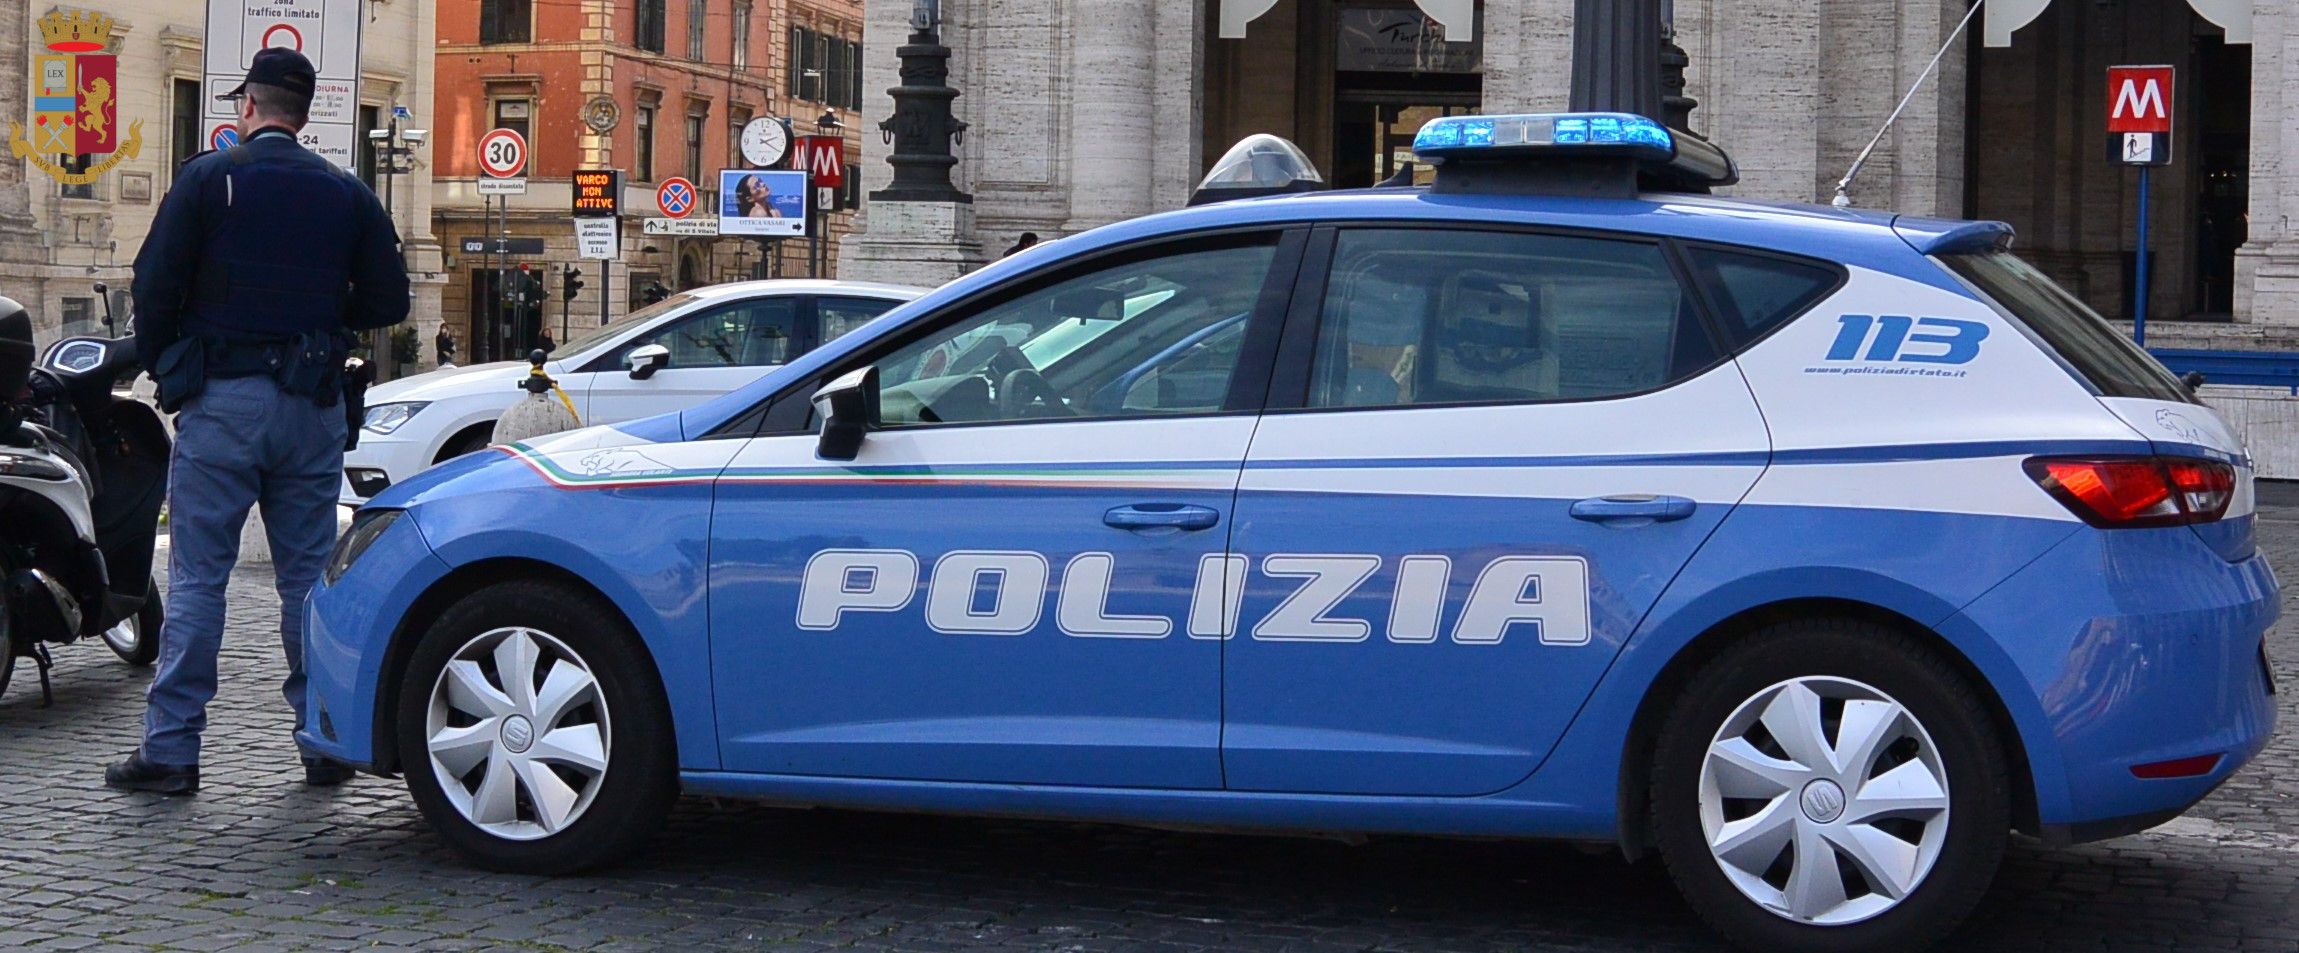 Roma, ristorante non controlla i Green Pass: agenti lo chiudono e costringono a pagare 1000 euro